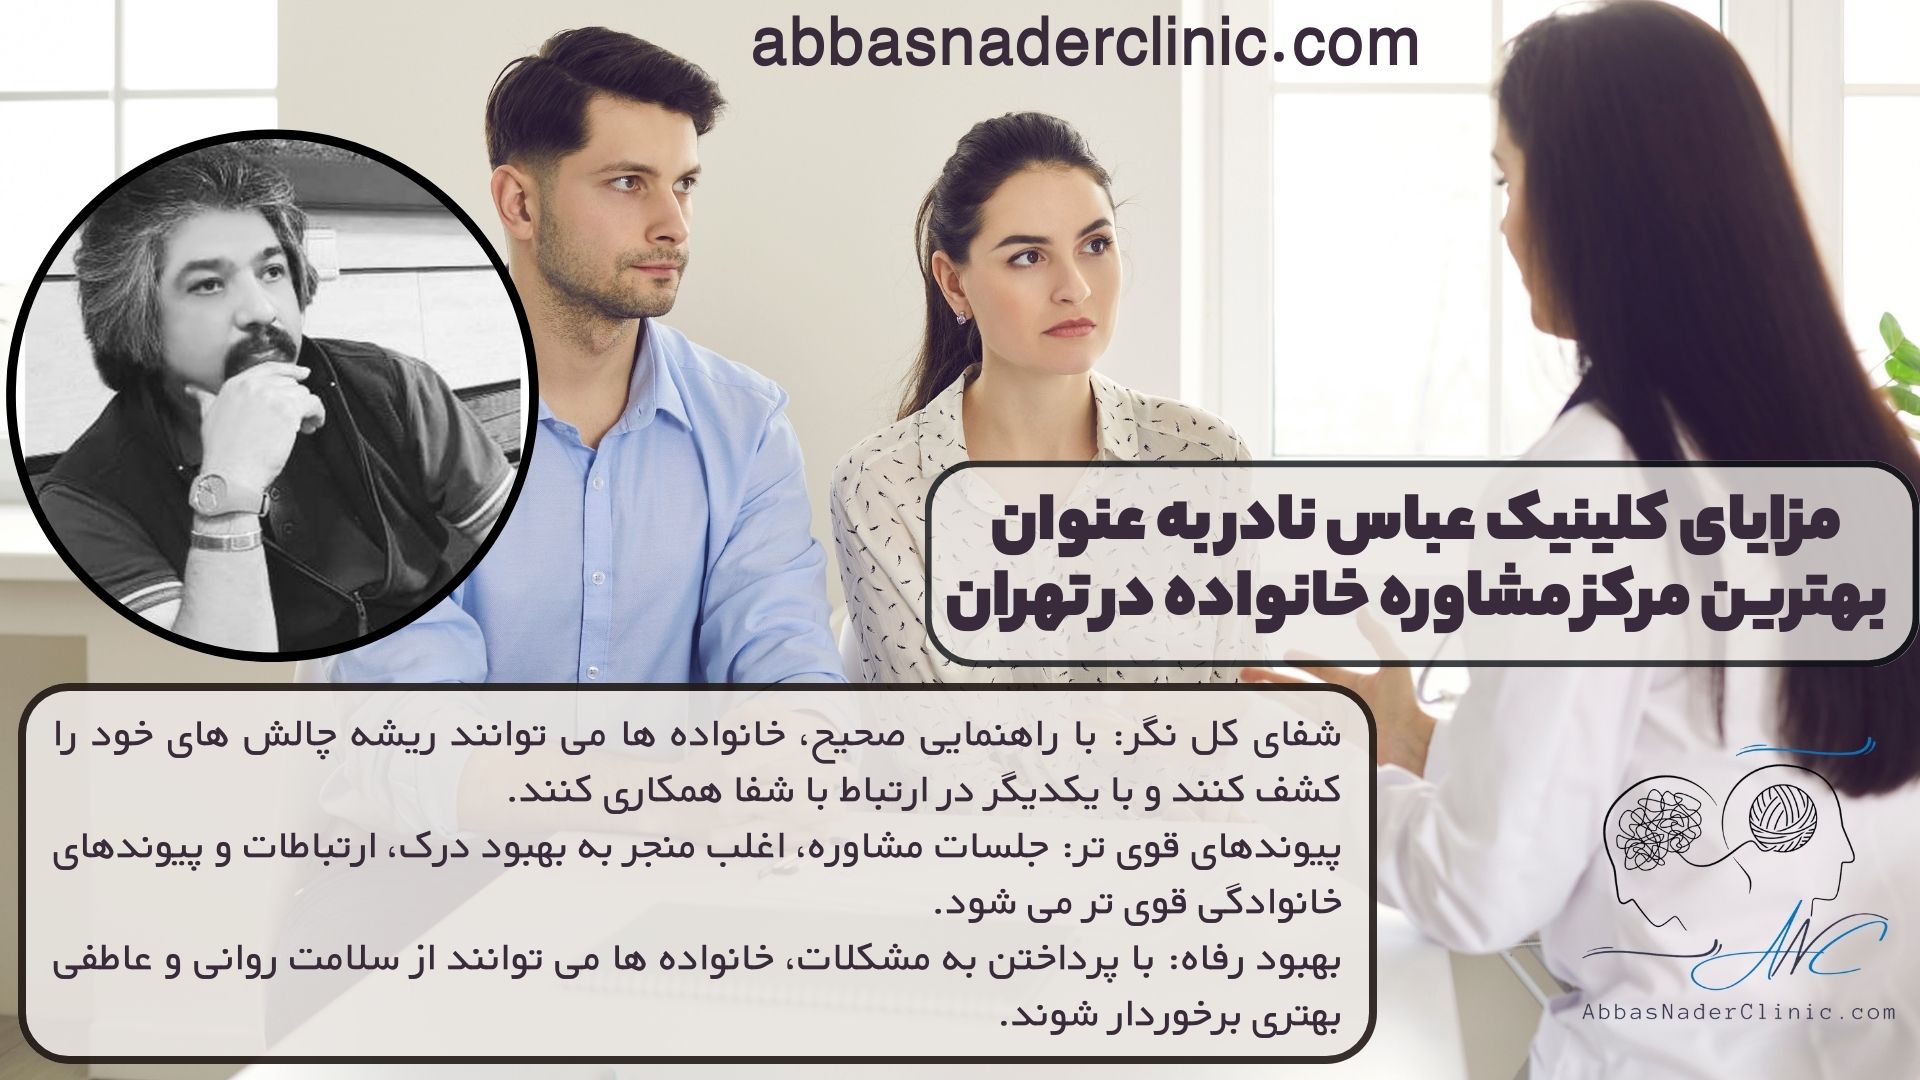 مزایای کلینیک عباس نادر به عنوان بهترین مرکز مشاوره خانواده در تهران